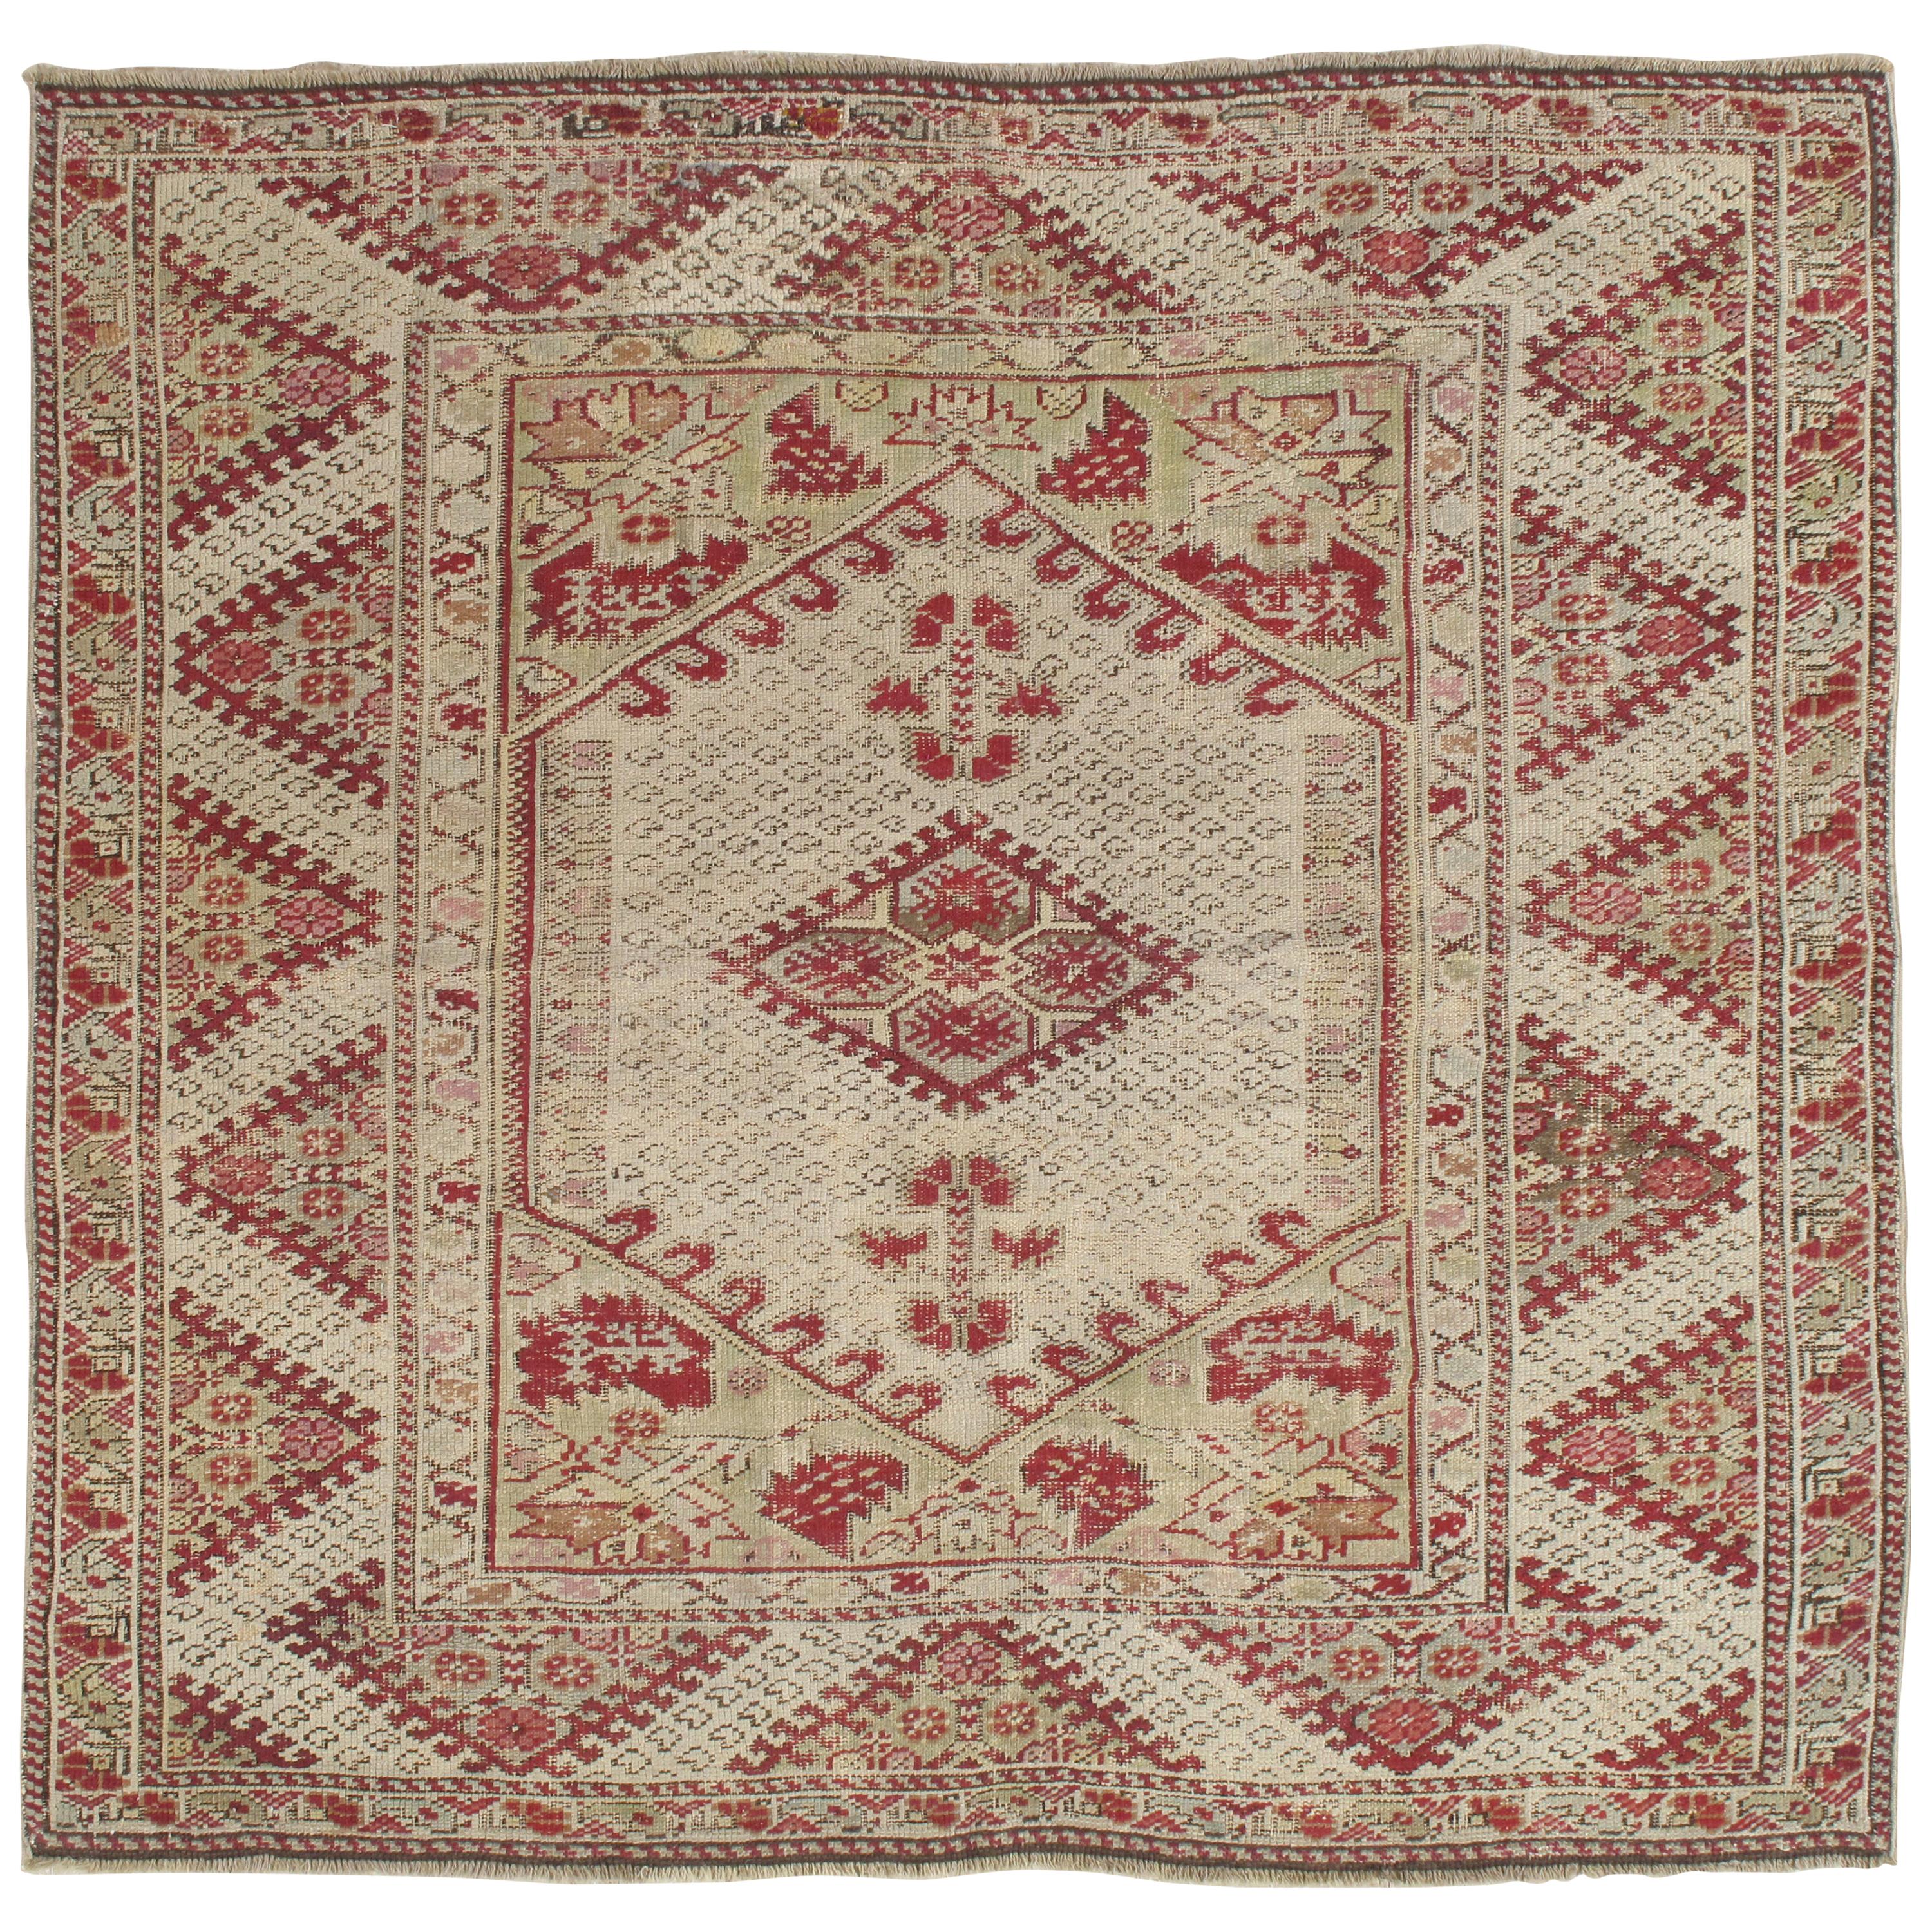 Tapis antique Ghiordes, tapis turc oriental fait à la main, beige, taupe